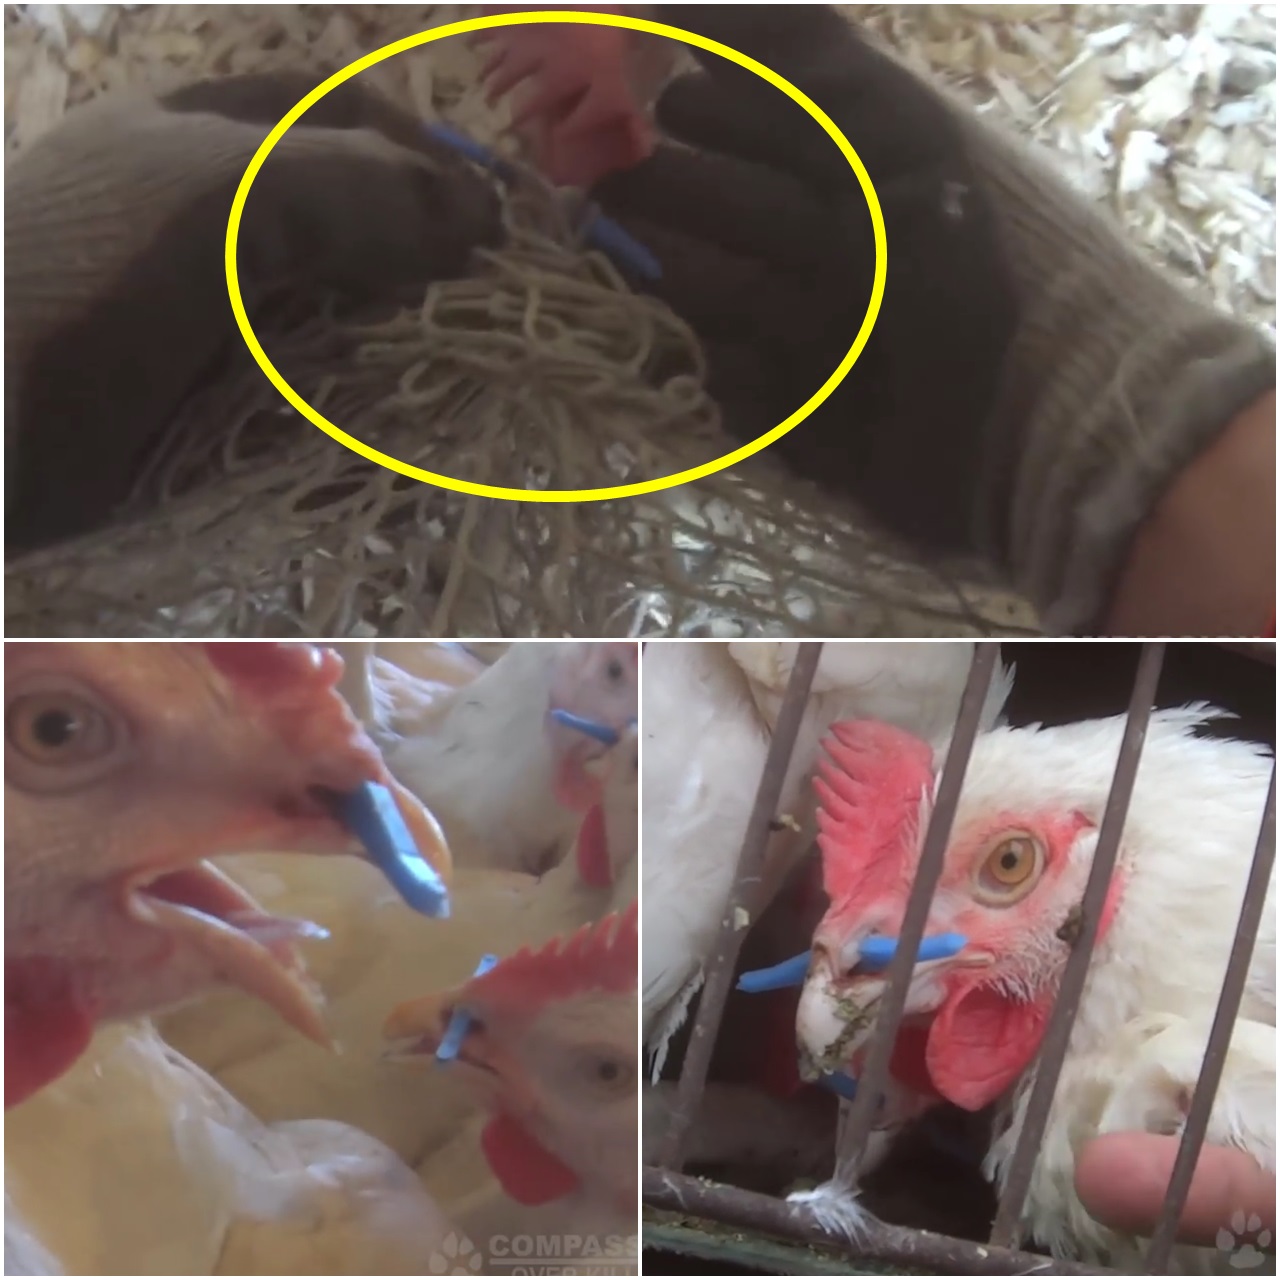 콧구멍의 플라스틱 막대가 그물망에 걸린 수탉(위 사진 노란색 원)을 동물보호 활동가가 구조하고 있다. 미국 동물보호단체  '도살에도 자비를(Compassion Over Killing)'이 유튜브에 공개한 영상 캡쳐.